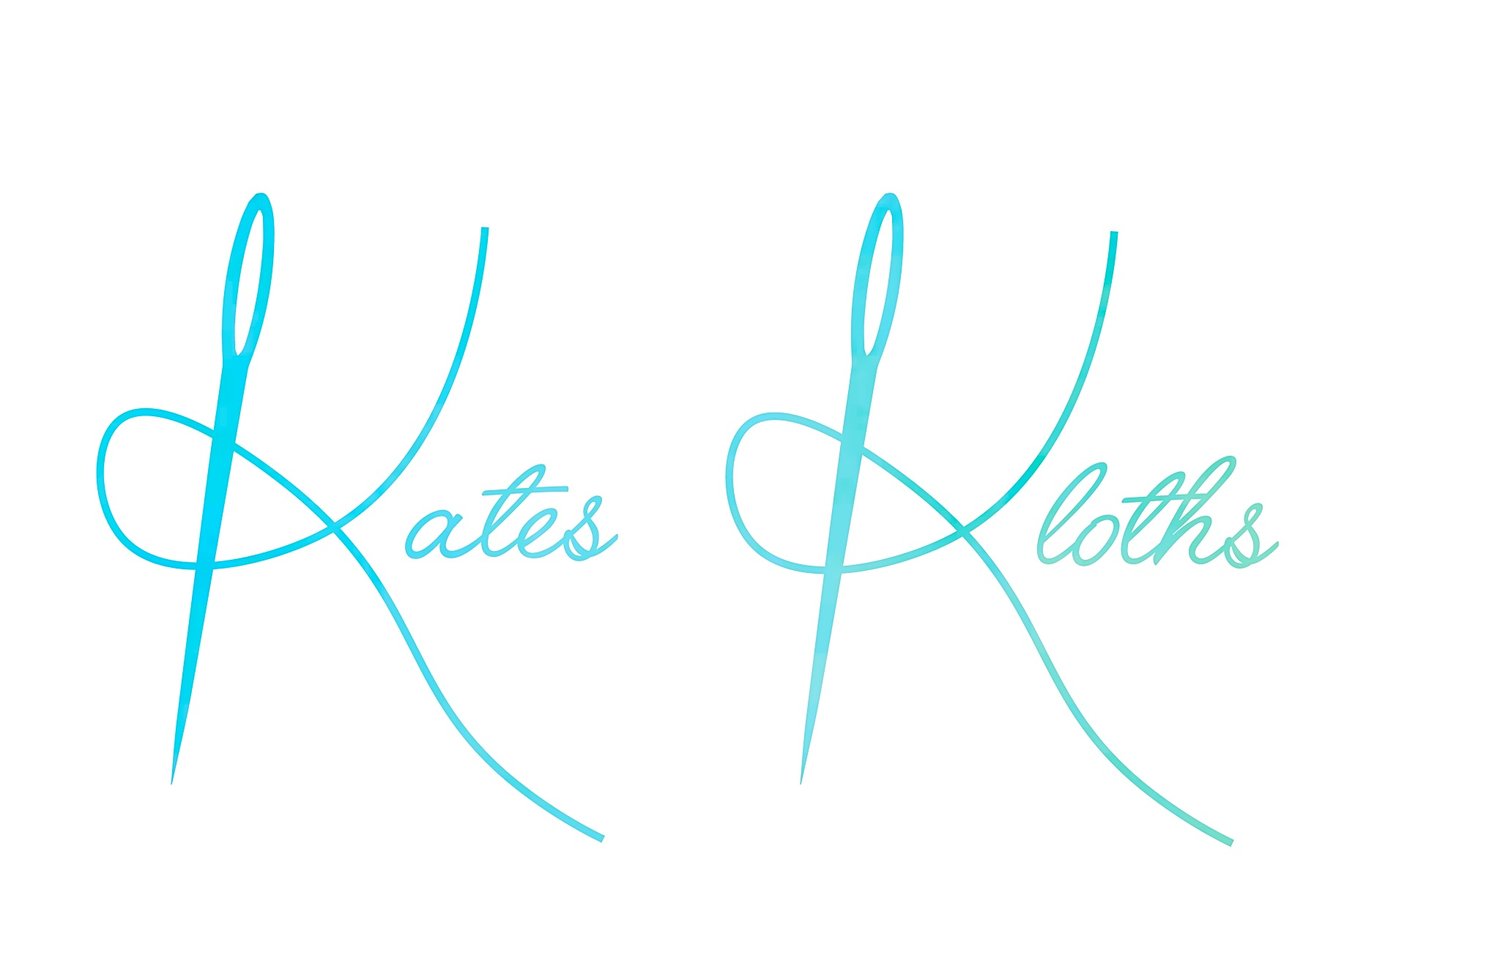 Kates Kloths